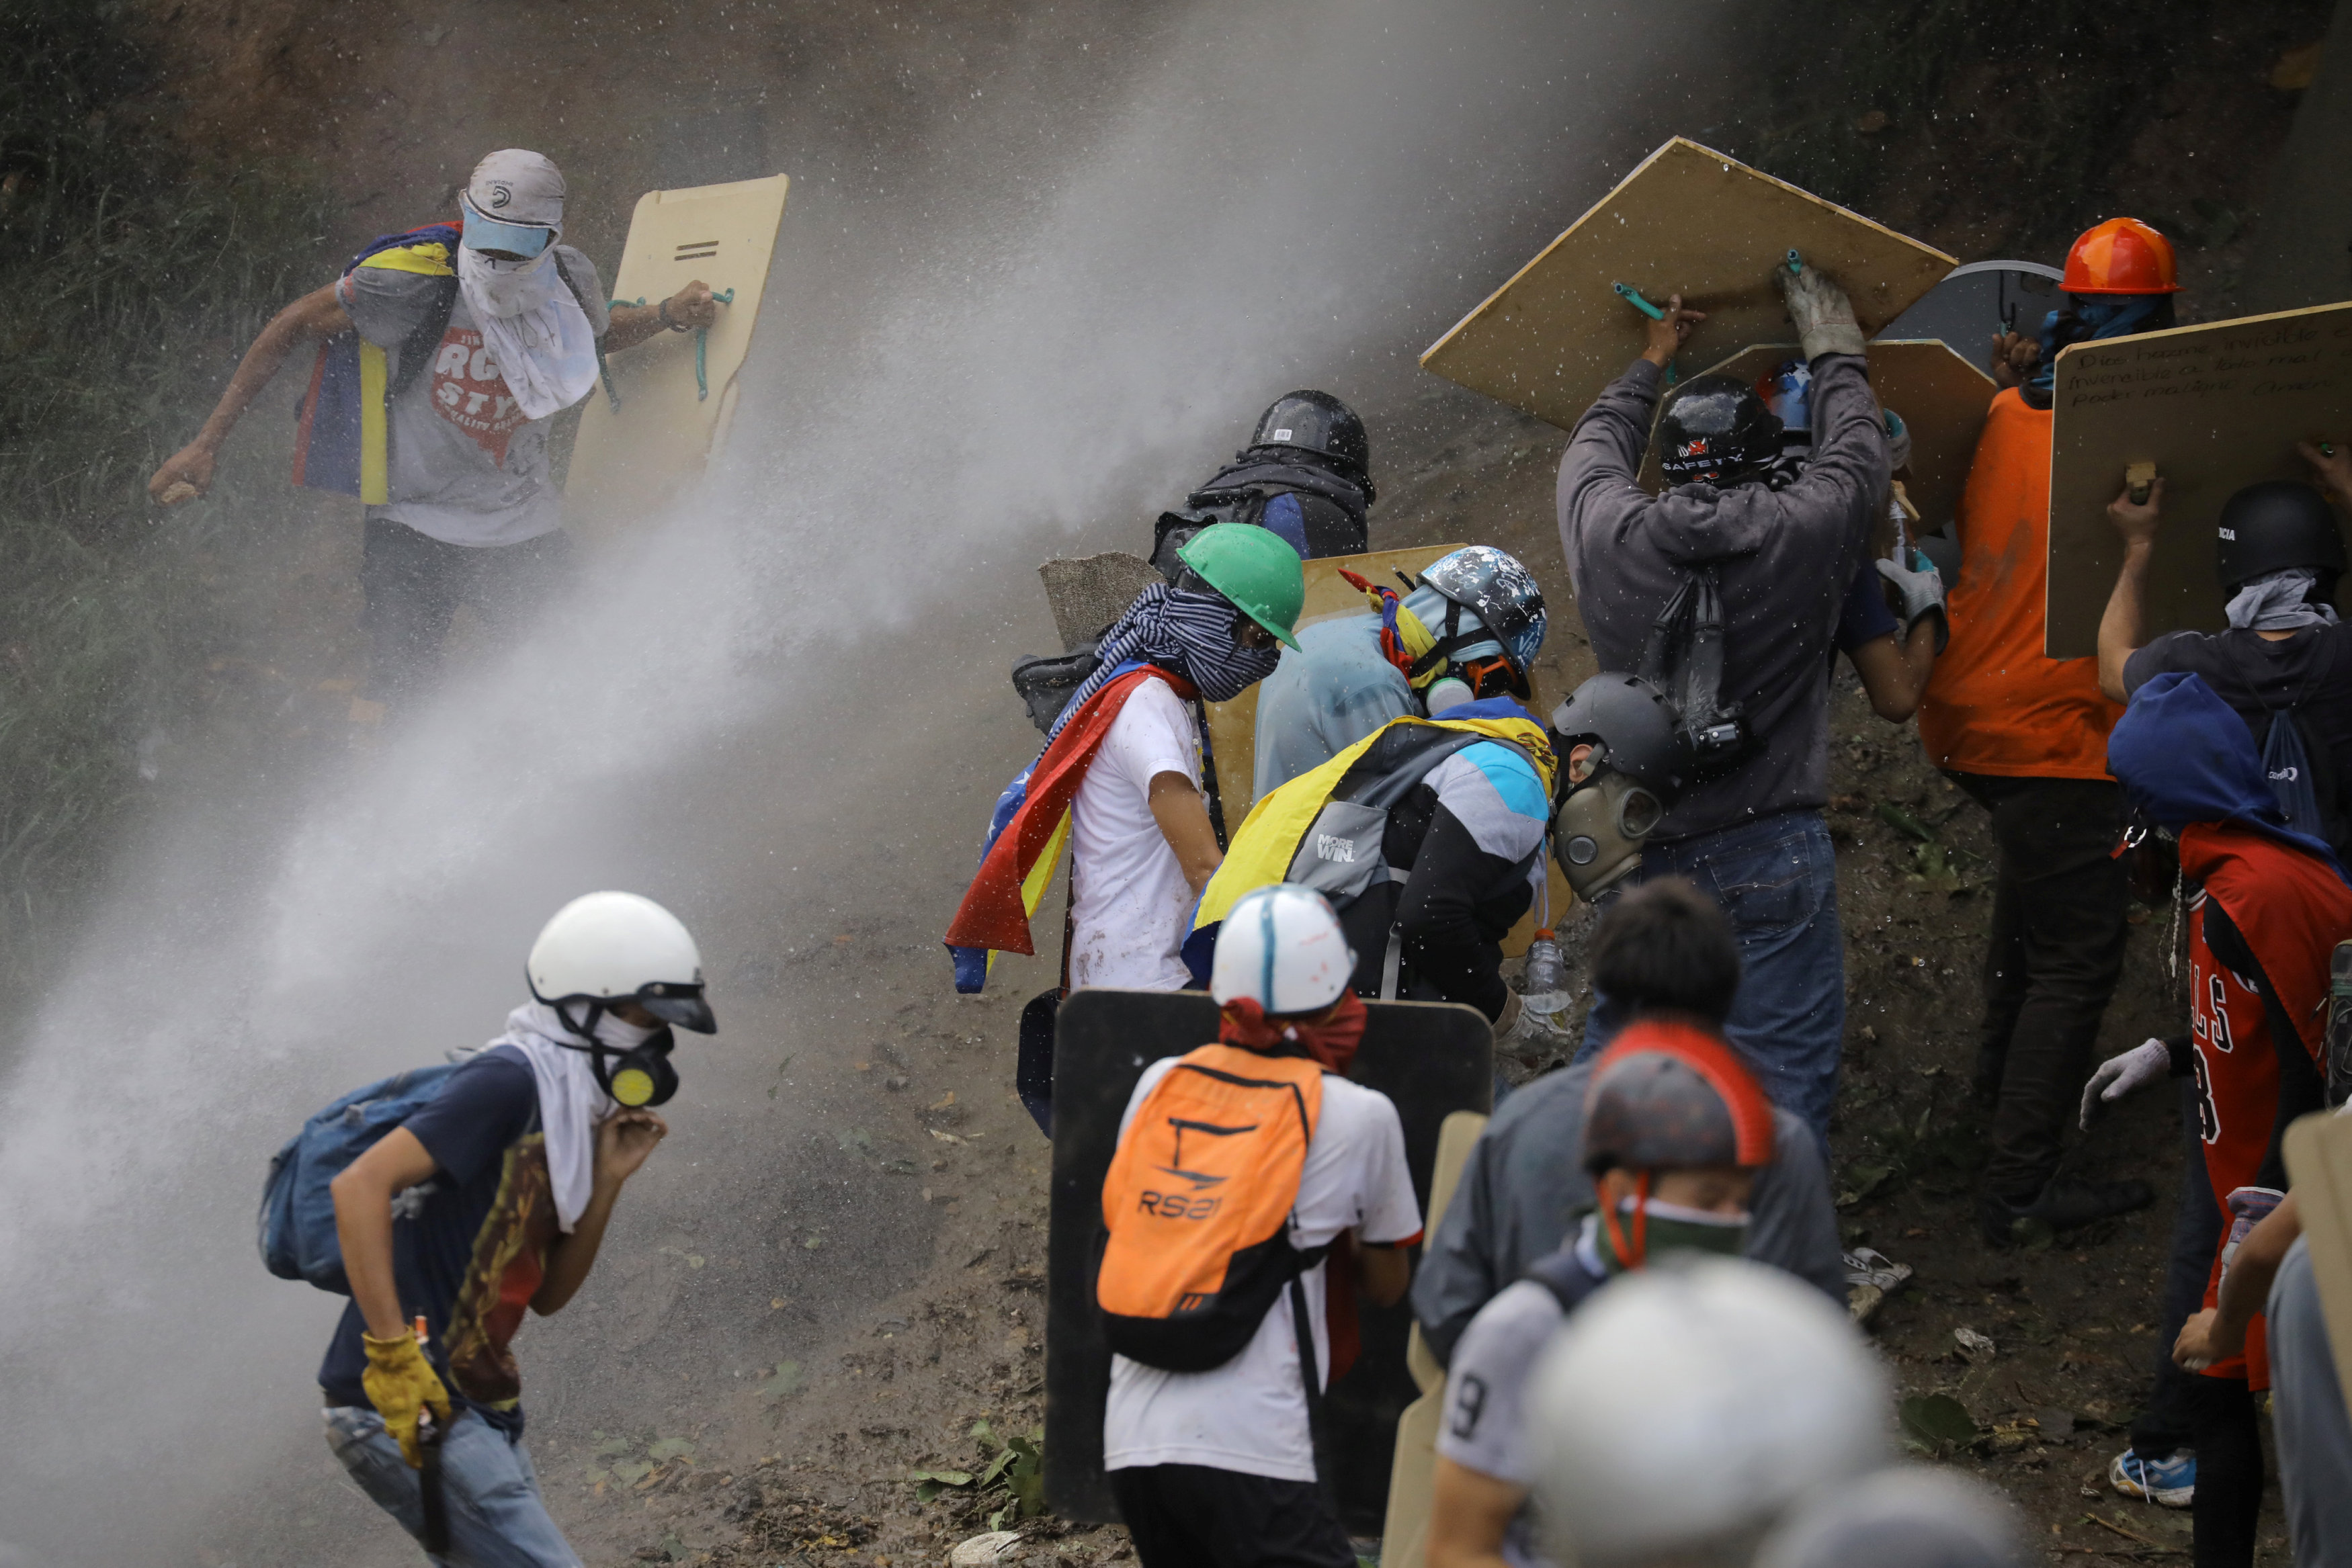 تجدد أعمال العنف فى فنزويلا احتجاجا على سياسة الحكومة